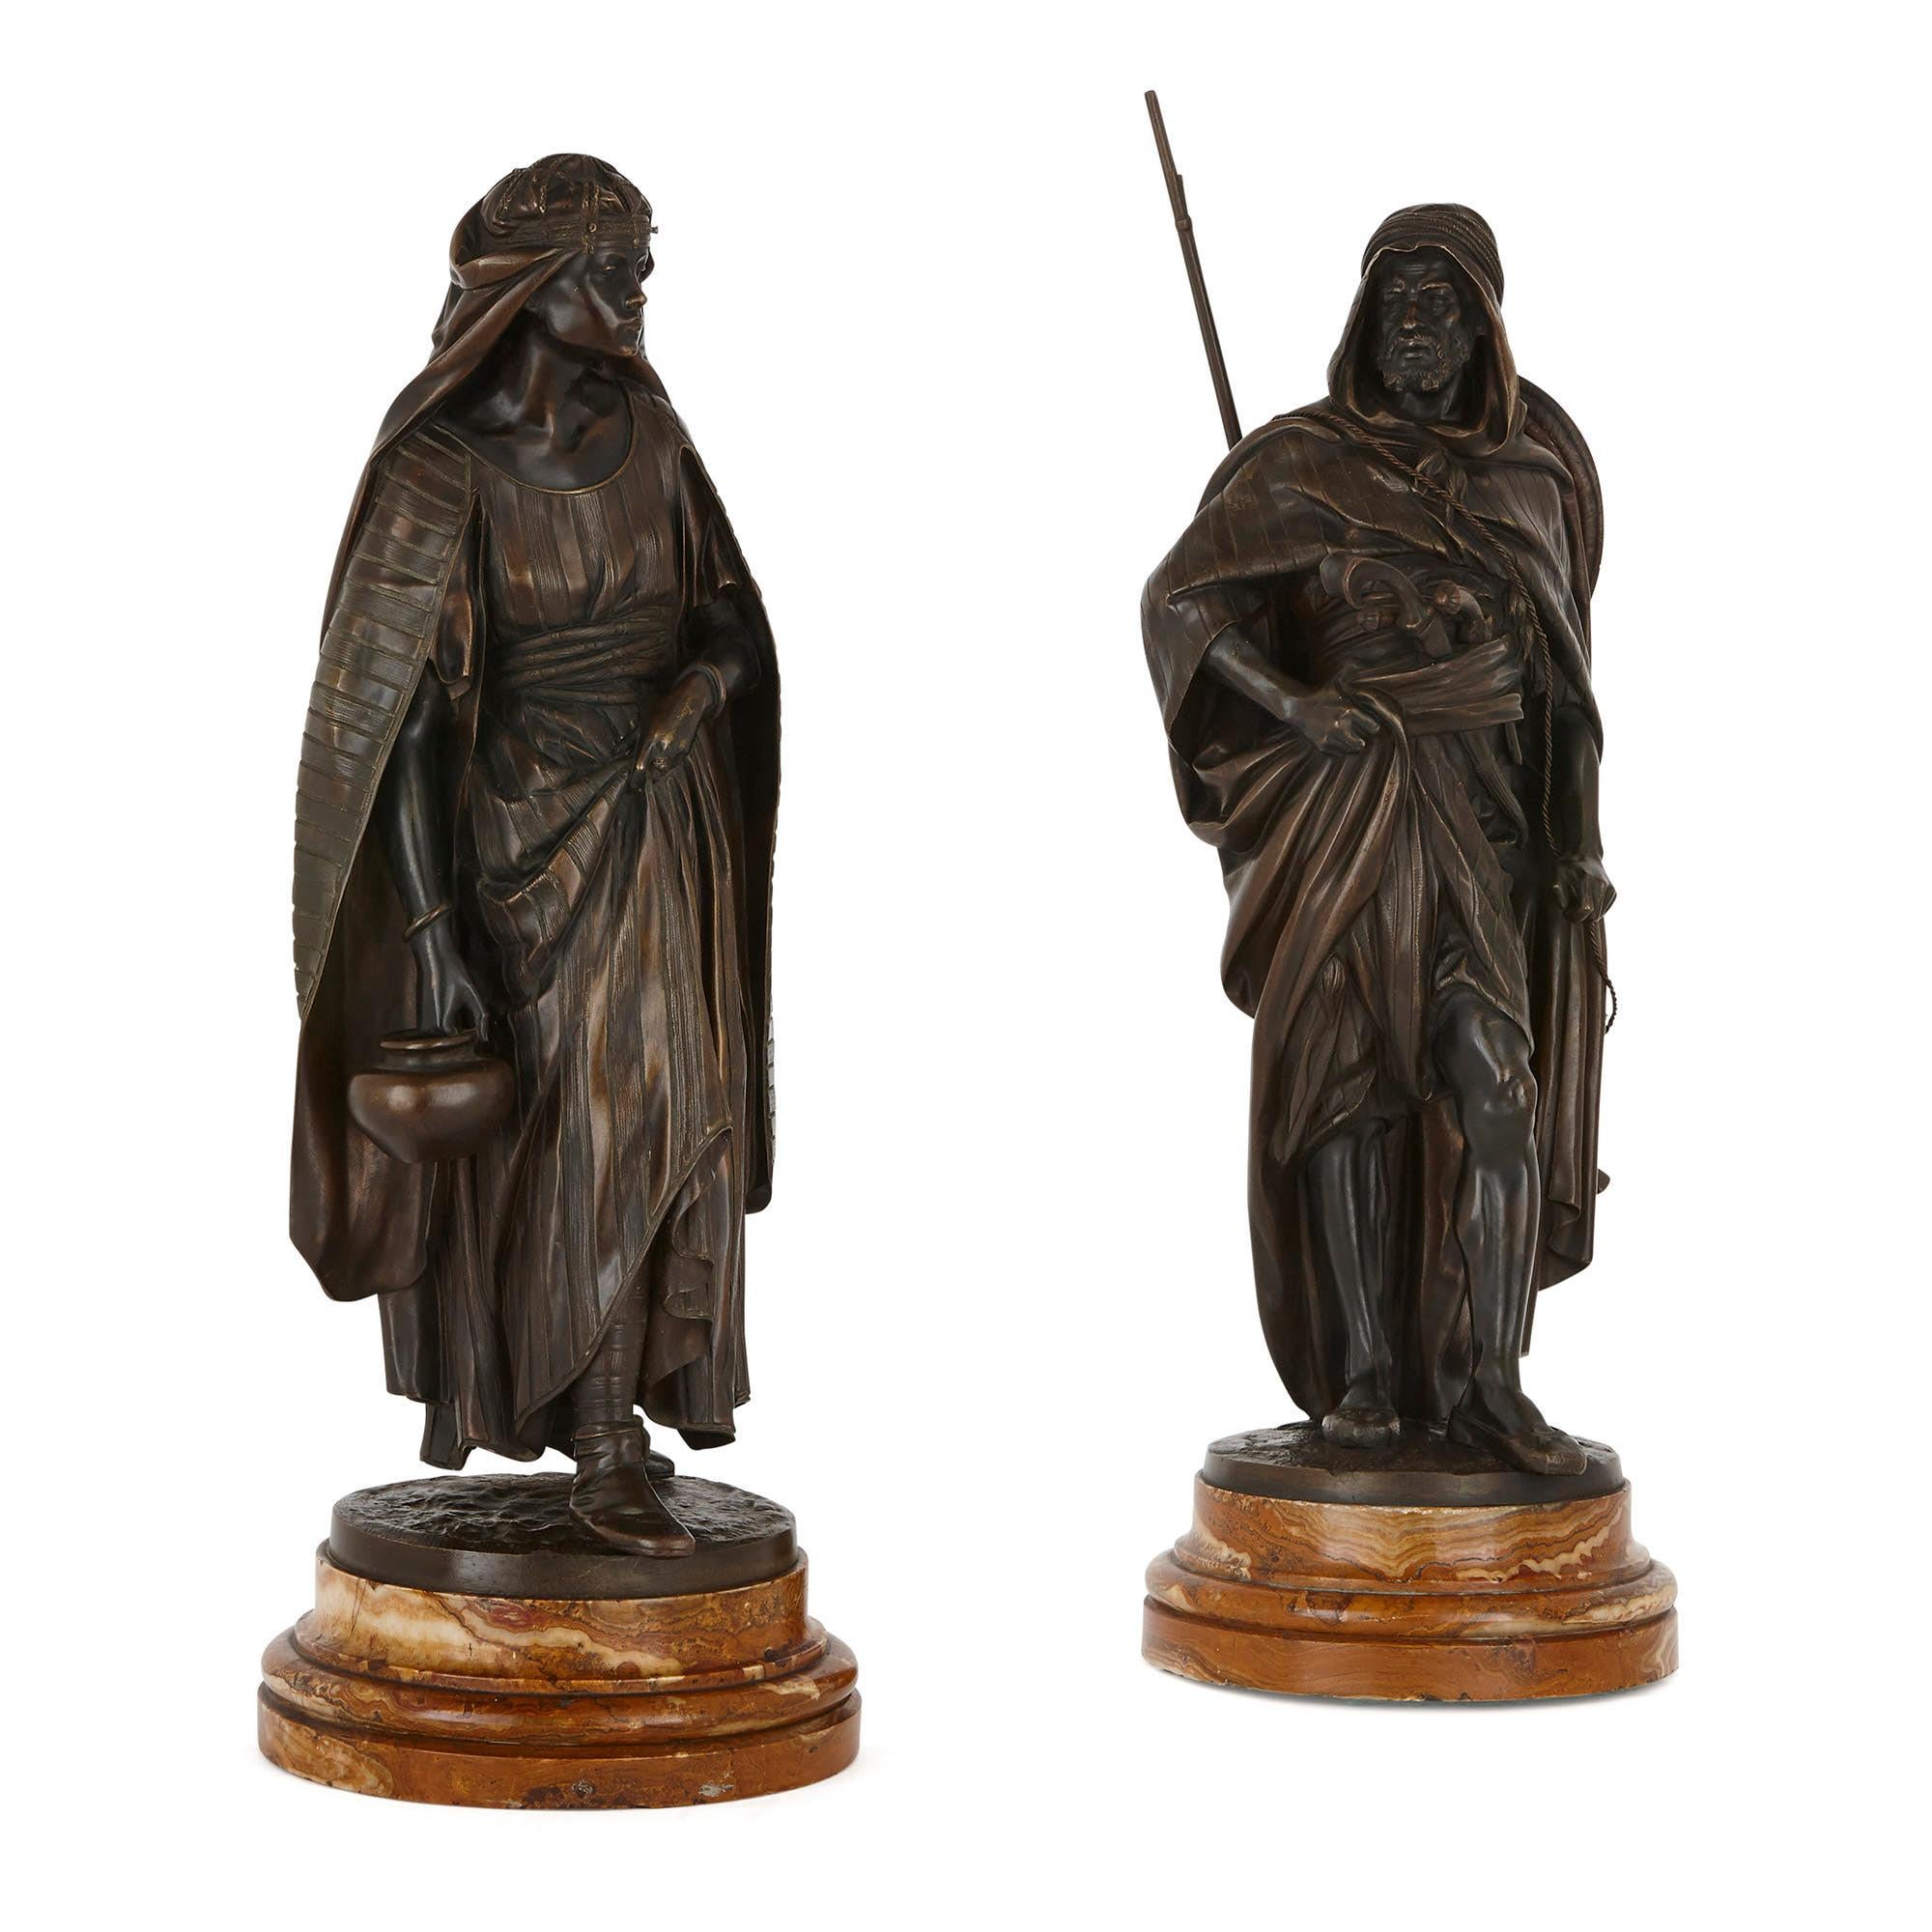 Ces magnifiques sculptures en bronze patiné ont été créées en France au XIXe siècle, à l'époque où l'art orientaliste était à la mode. Elles sont l'œuvre du prestigieux sculpteur Jean Jules Salmson (français, 1823-1902). Intitulées 